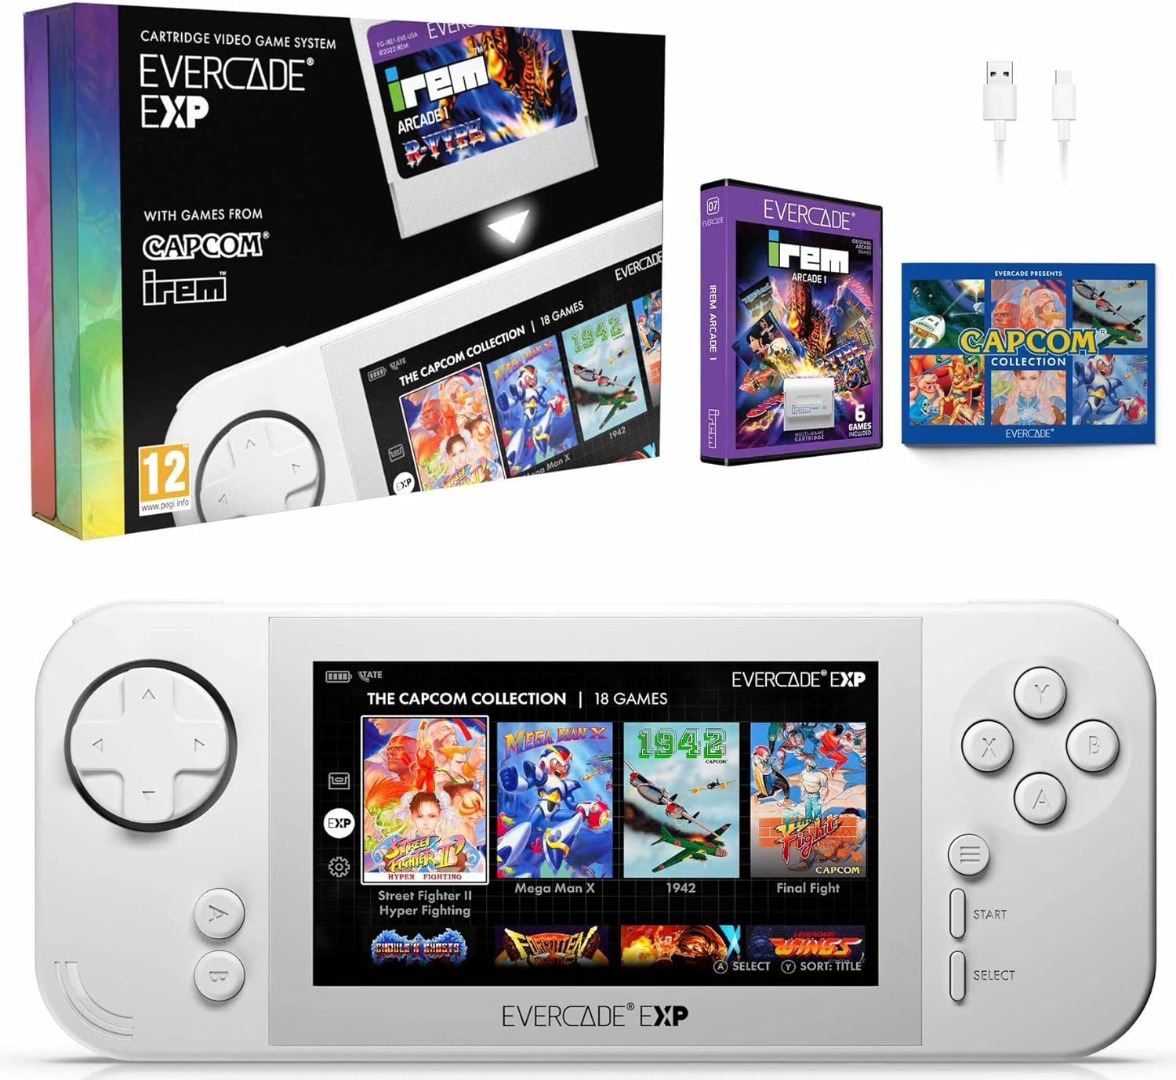 Consola Blaze Evercade EXP Capcom Edition + IREM Arcade 1